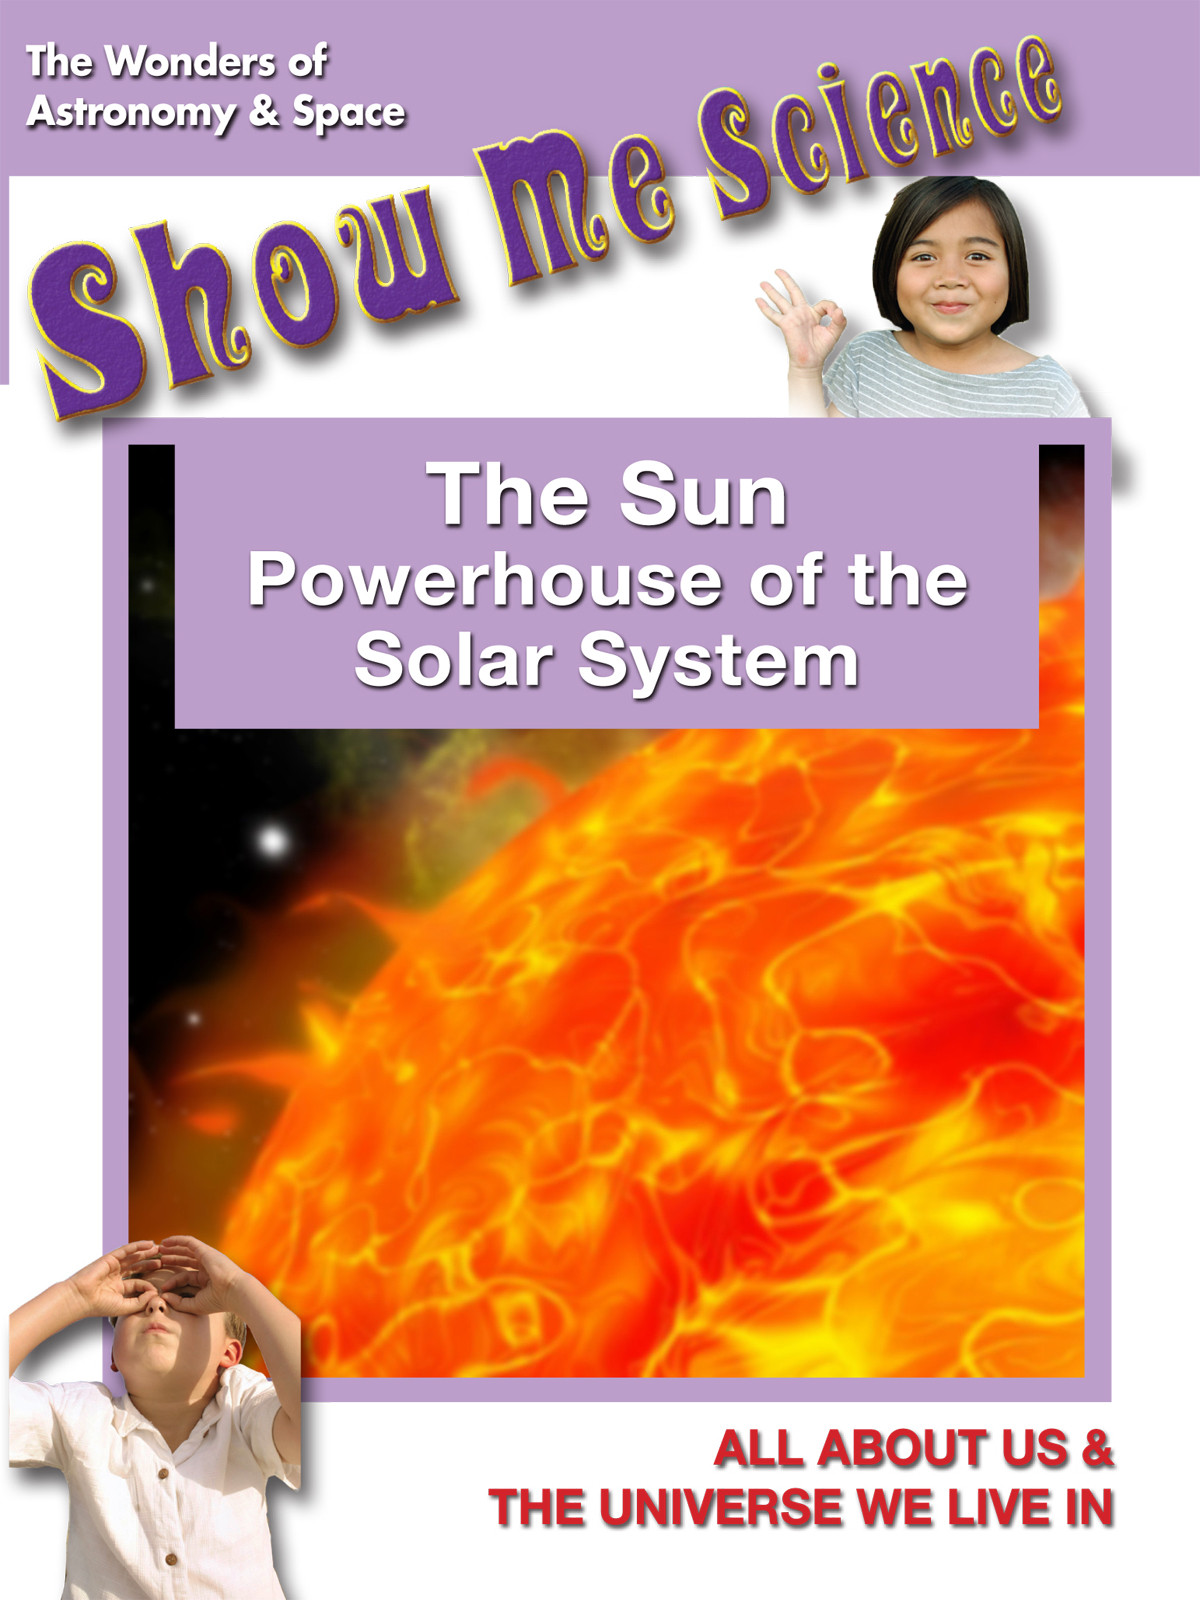 K4643 - The Sun Powerhouse of the Solar System